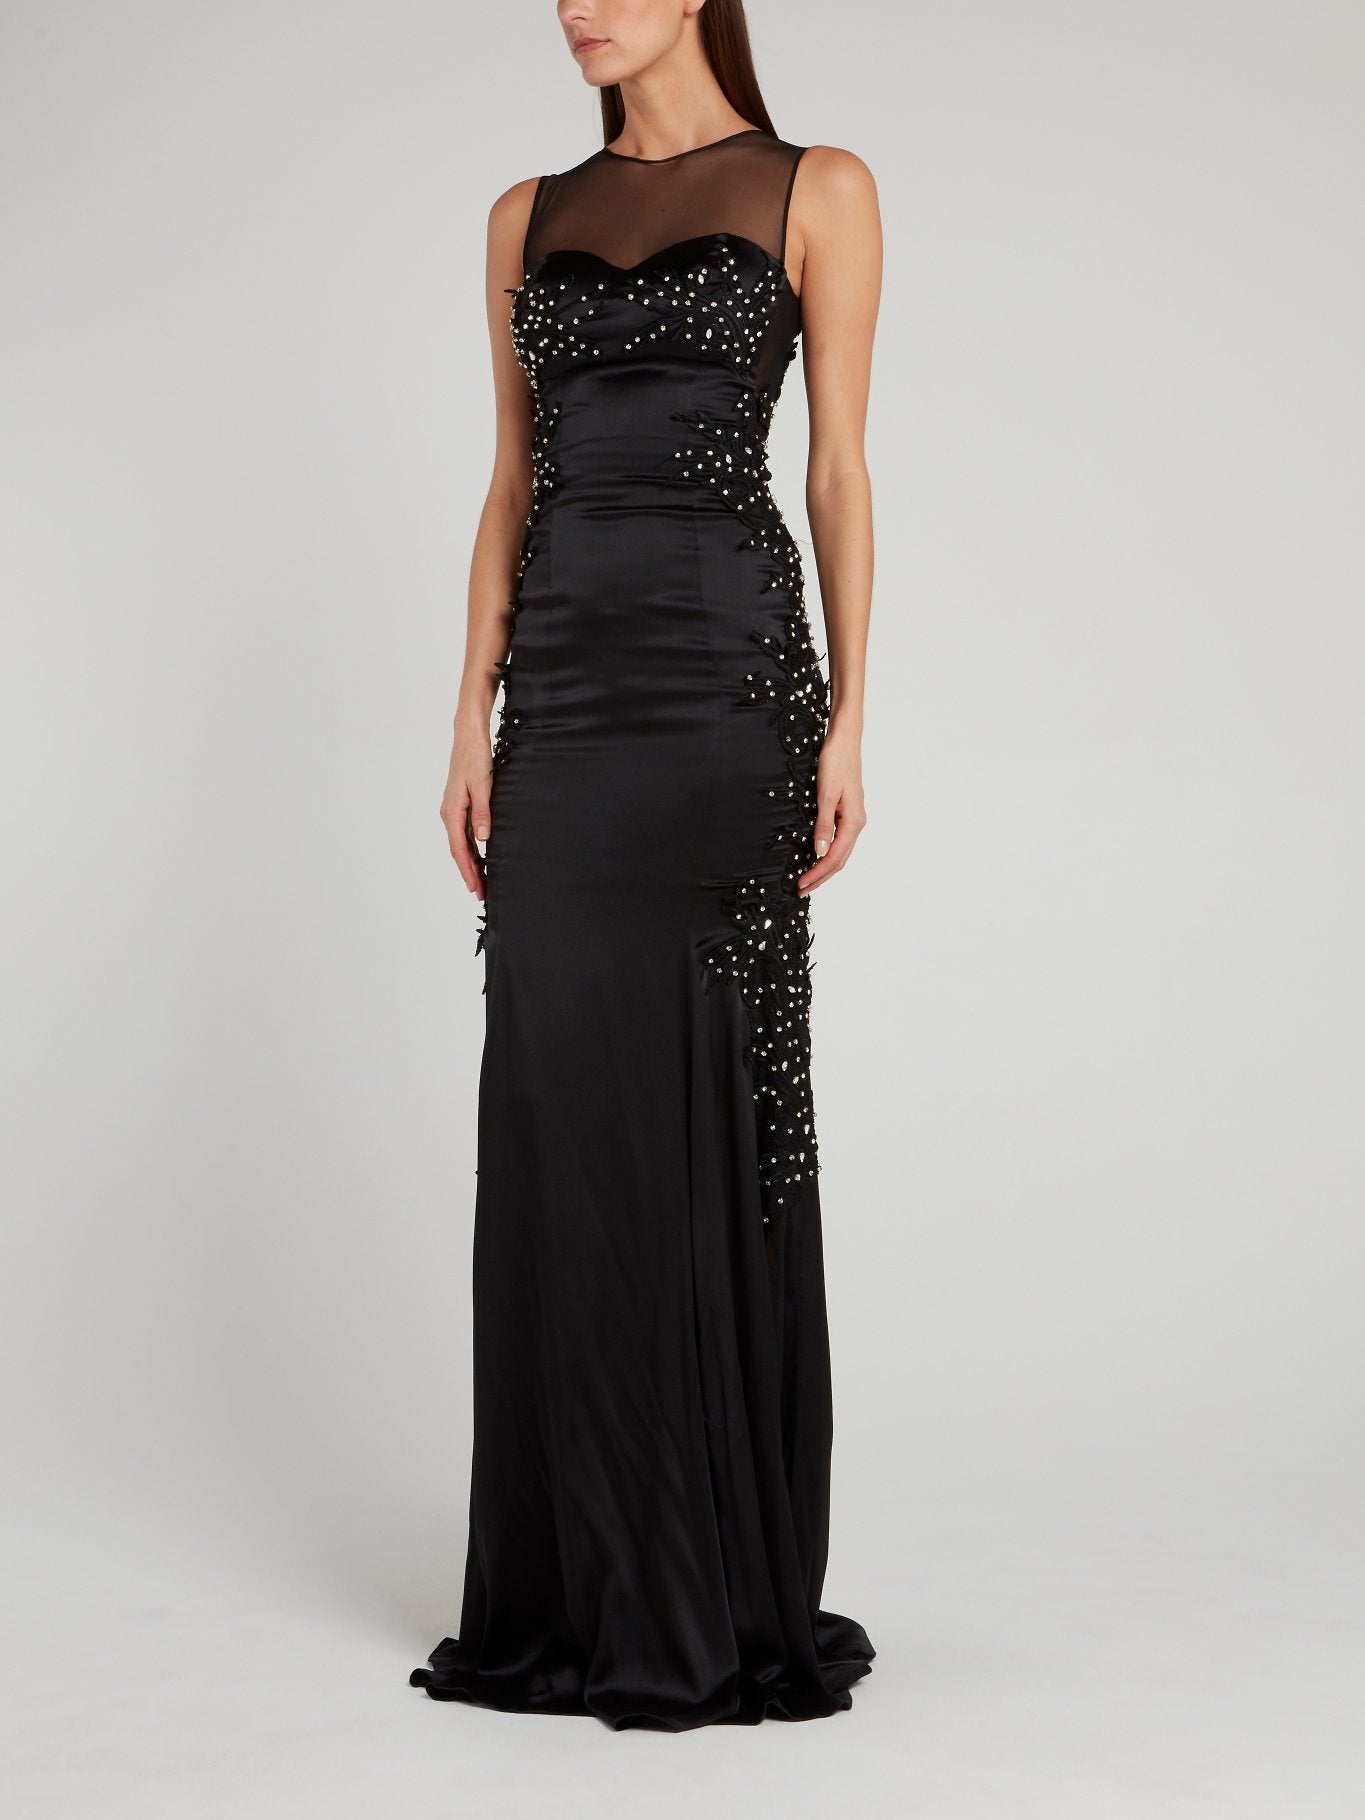 Black Illusion Neckline Embellished Evening Dress